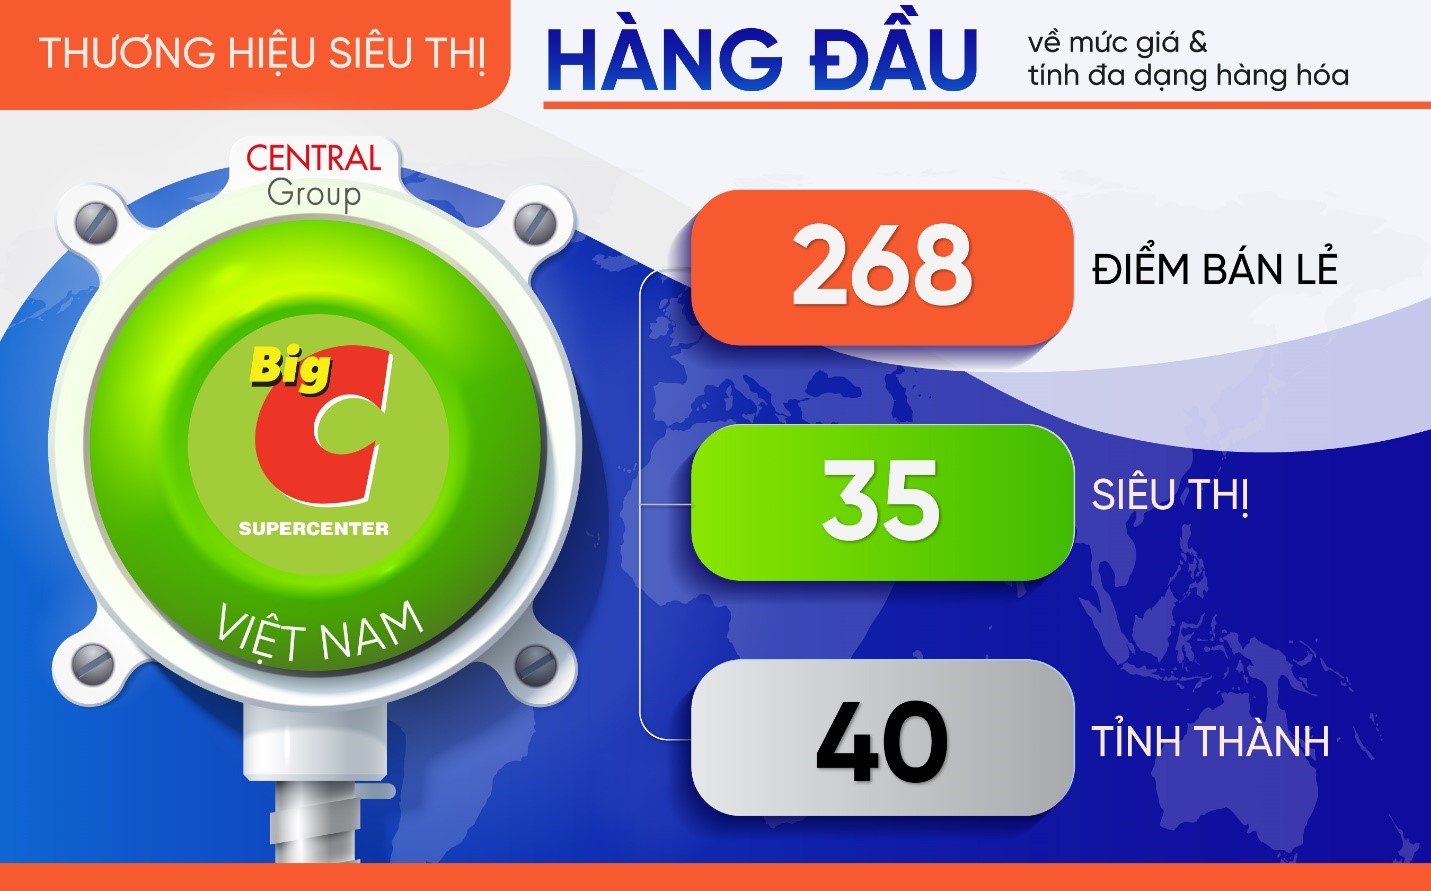 BigC Việt Nam triển khai hóa đơn điện tử E-invoice trên toàn hệ thống bán lẻ